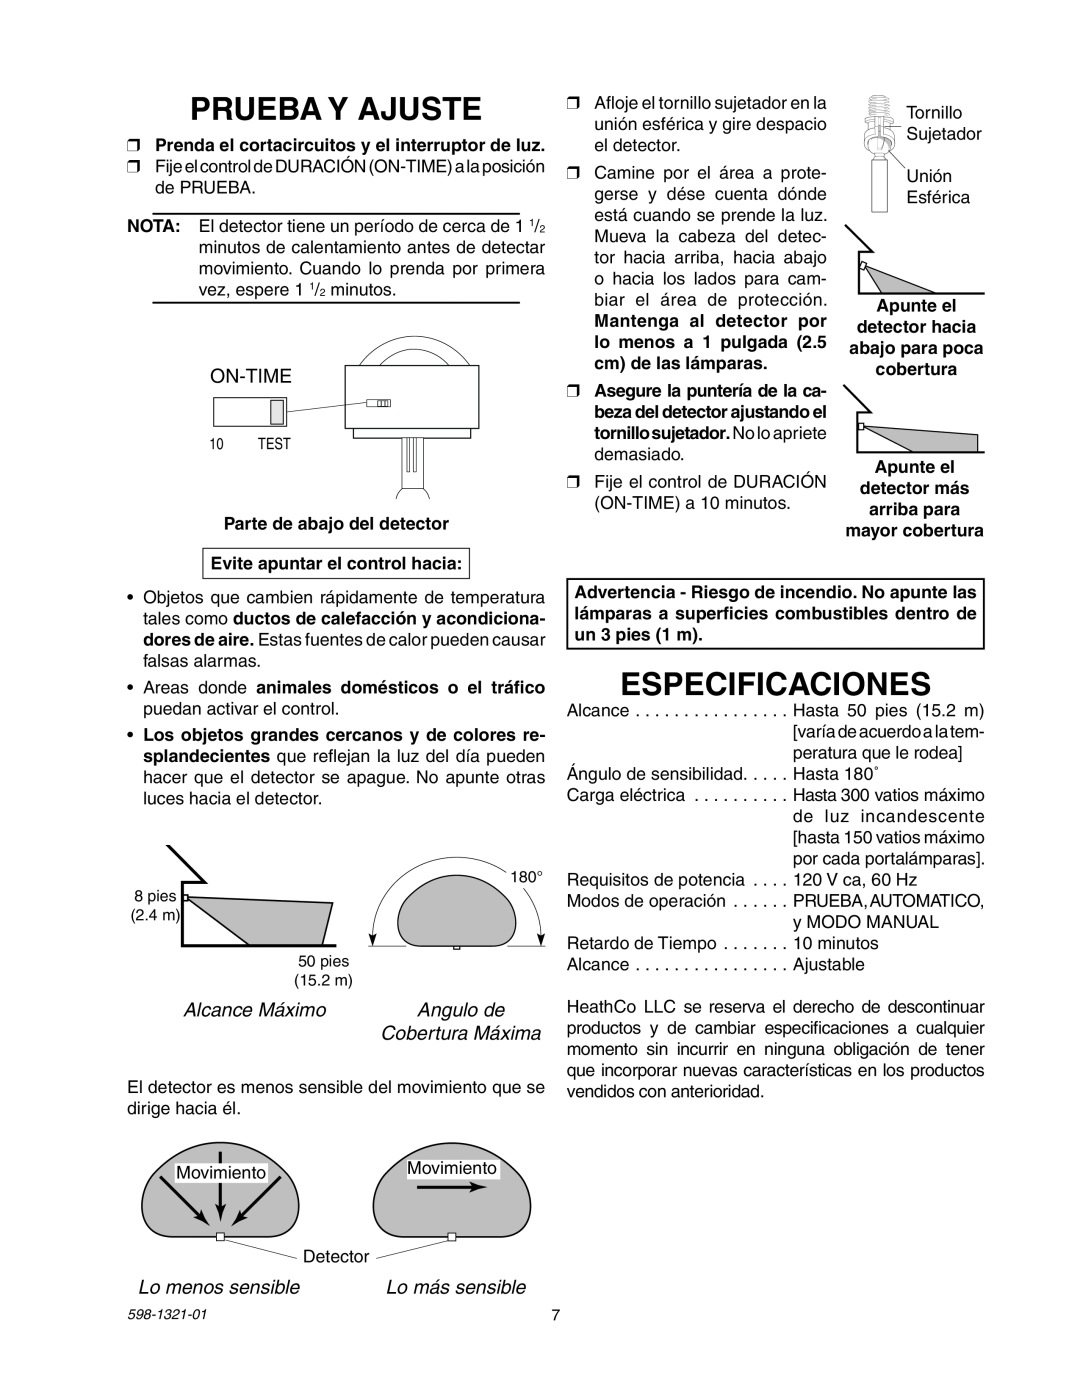 Heath Zenith BL-1800 manual Prueba Y Ajuste, Especificaciones, On-Time, Alcance Máximo, Angulo de, Cobertura Máxima 